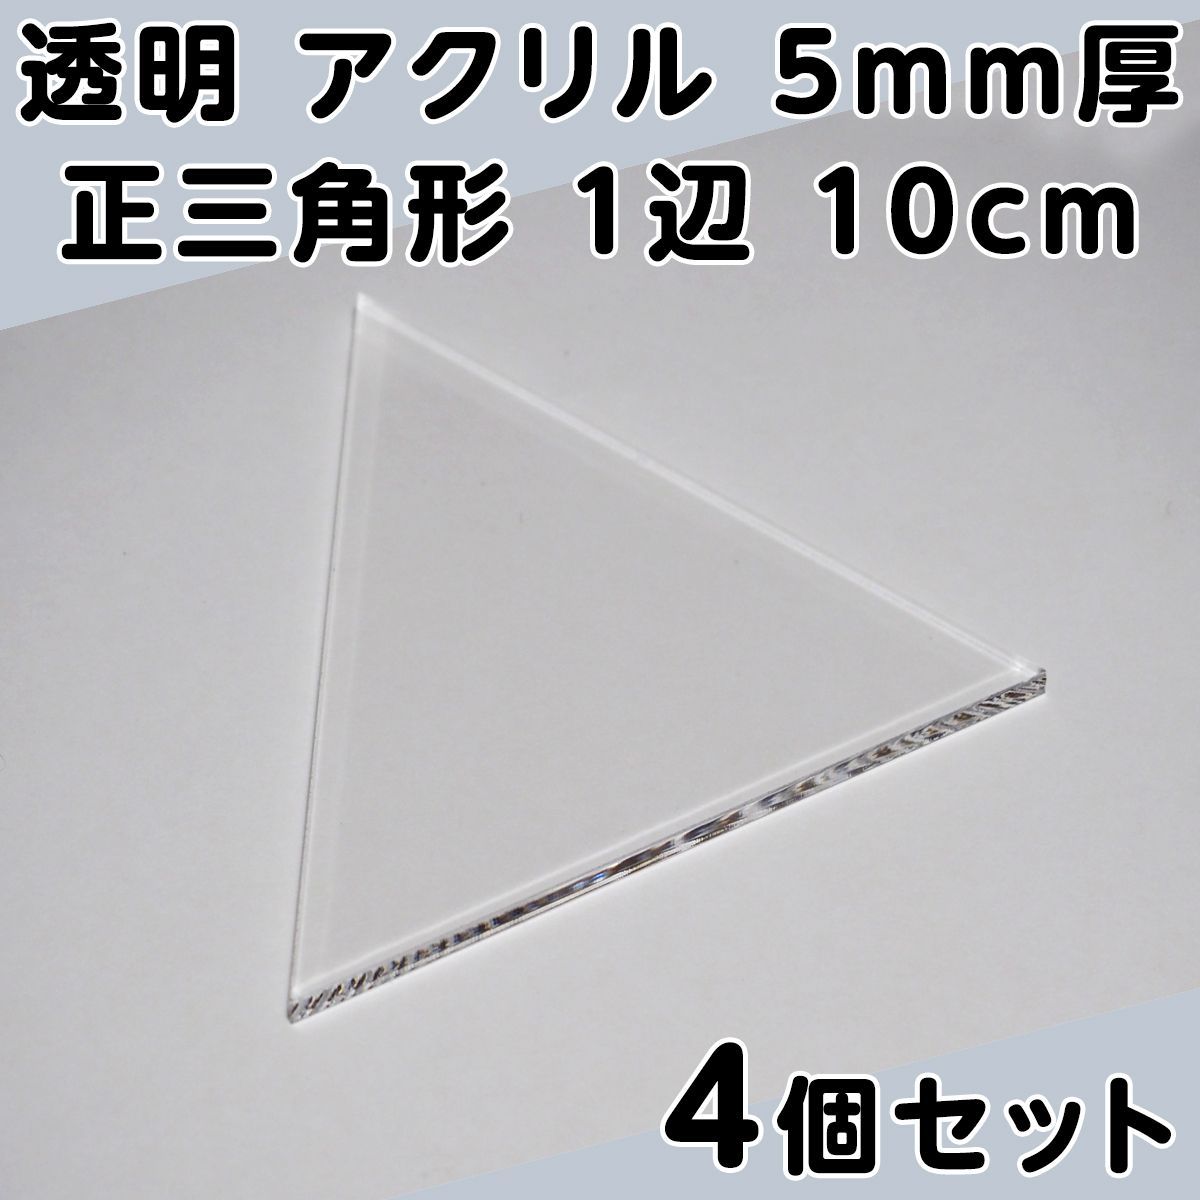 透明 アクリル 5mm厚 正三角形 1辺 10cm 4個セット - メルカリ